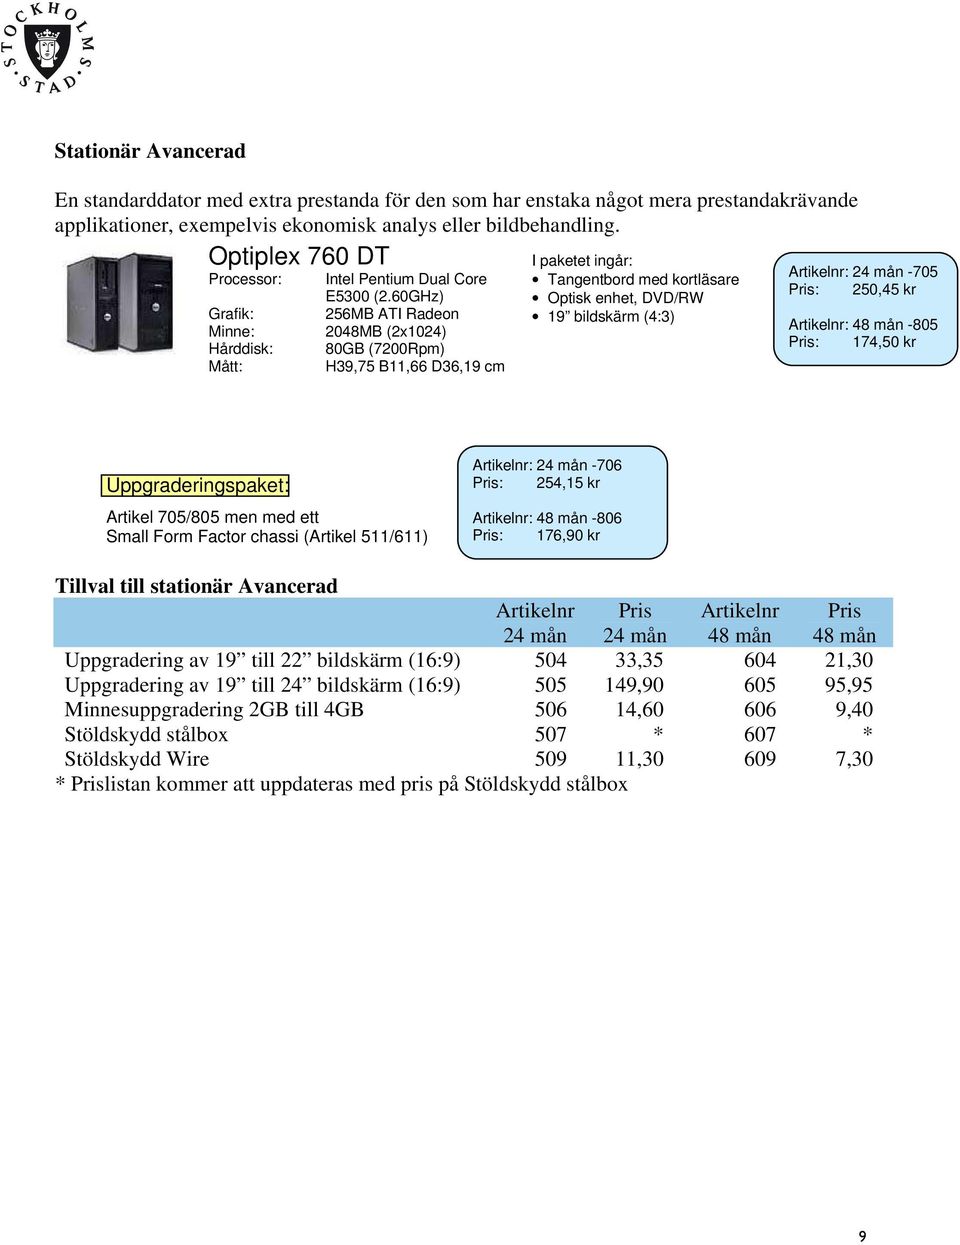 60GHz) 256MB ATI Radeon 2048MB (2x1024) 80GB (7200Rpm) H39,75 B11,66 D36,19 cm I paketet ingår: Tangentbord med kortläsare Optisk enhet, DVD/RW 19 bildskärm (4:3) : -705 : 250,45 kr : -805 : 174,50